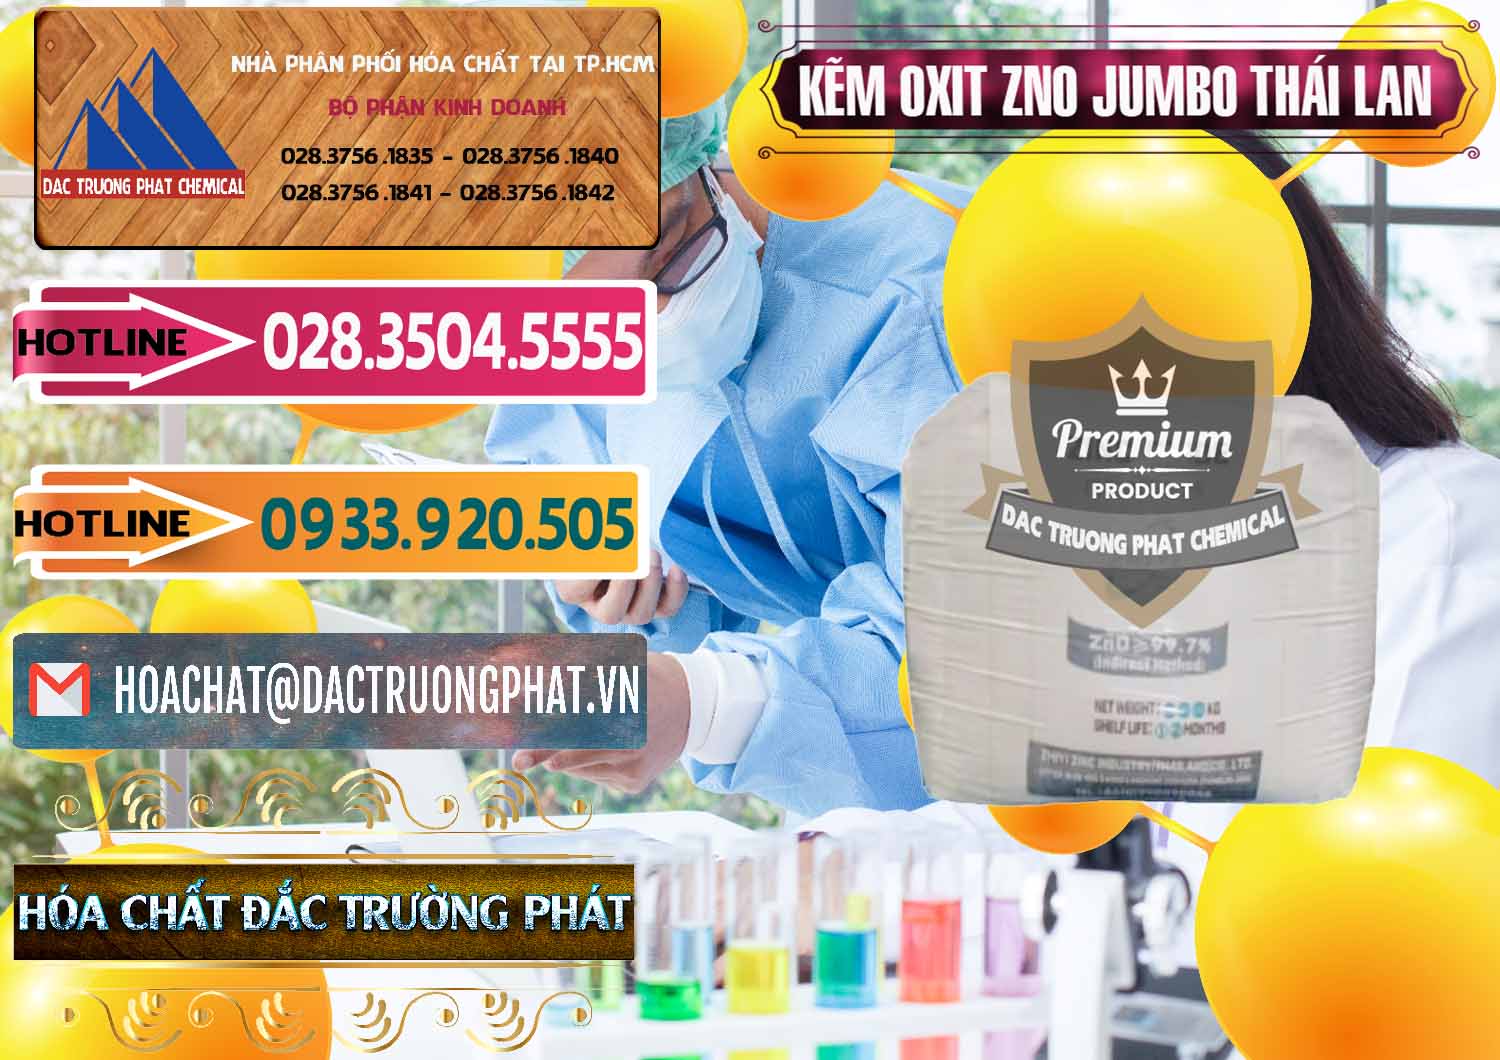 Nơi chuyên cung cấp - bán Zinc Oxide - Bột Kẽm Oxit ZNO Jumbo Bành Thái Lan Thailand - 0370 - Chuyên nhập khẩu _ cung cấp hóa chất tại TP.HCM - dactruongphat.vn